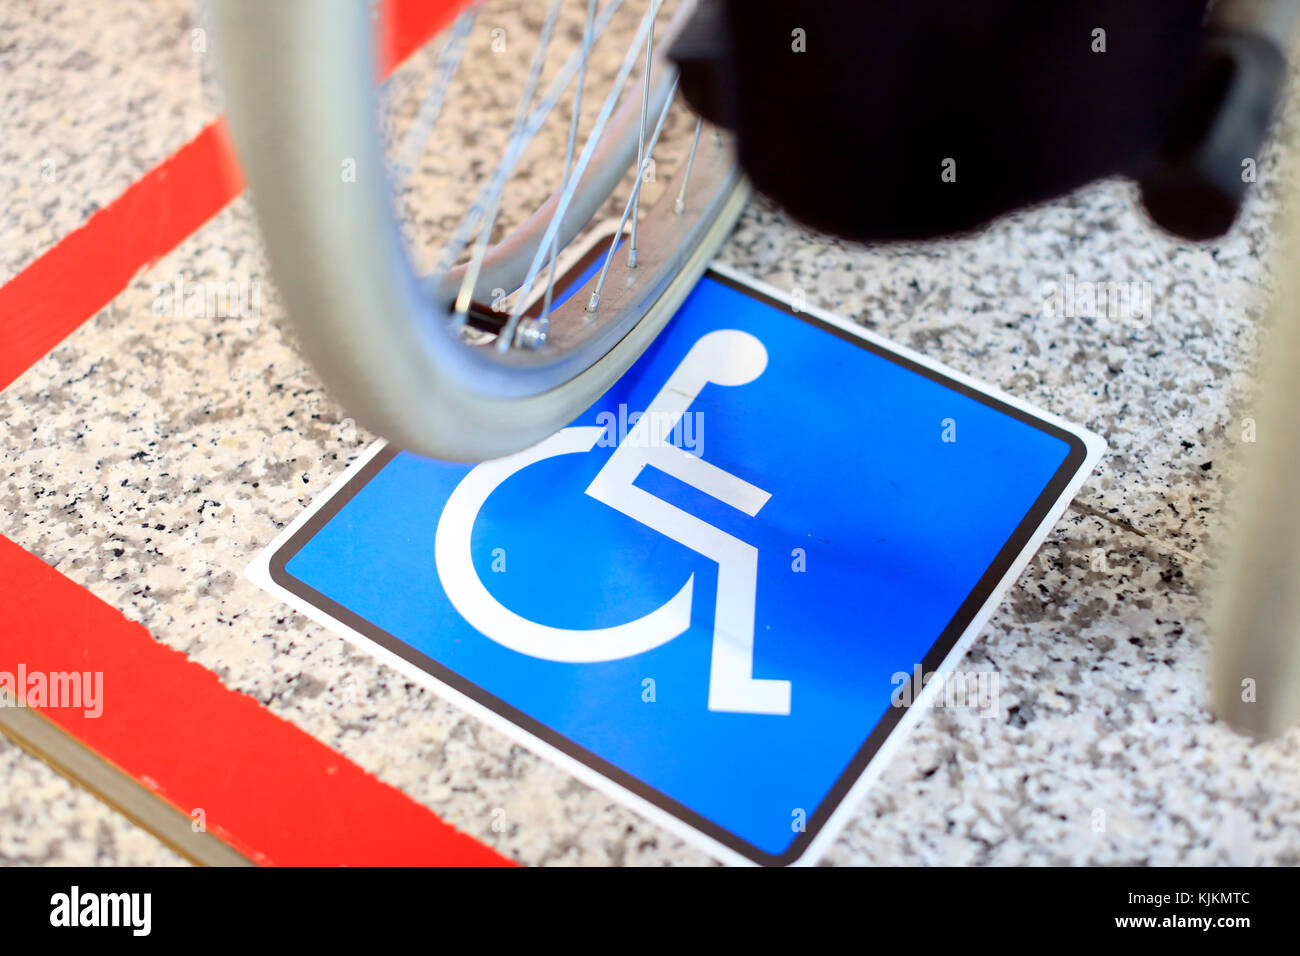 El aeropuerto de Ginebra. Estacionamiento para discapacitados y sillas de ruedas. Suiza. Foto de stock